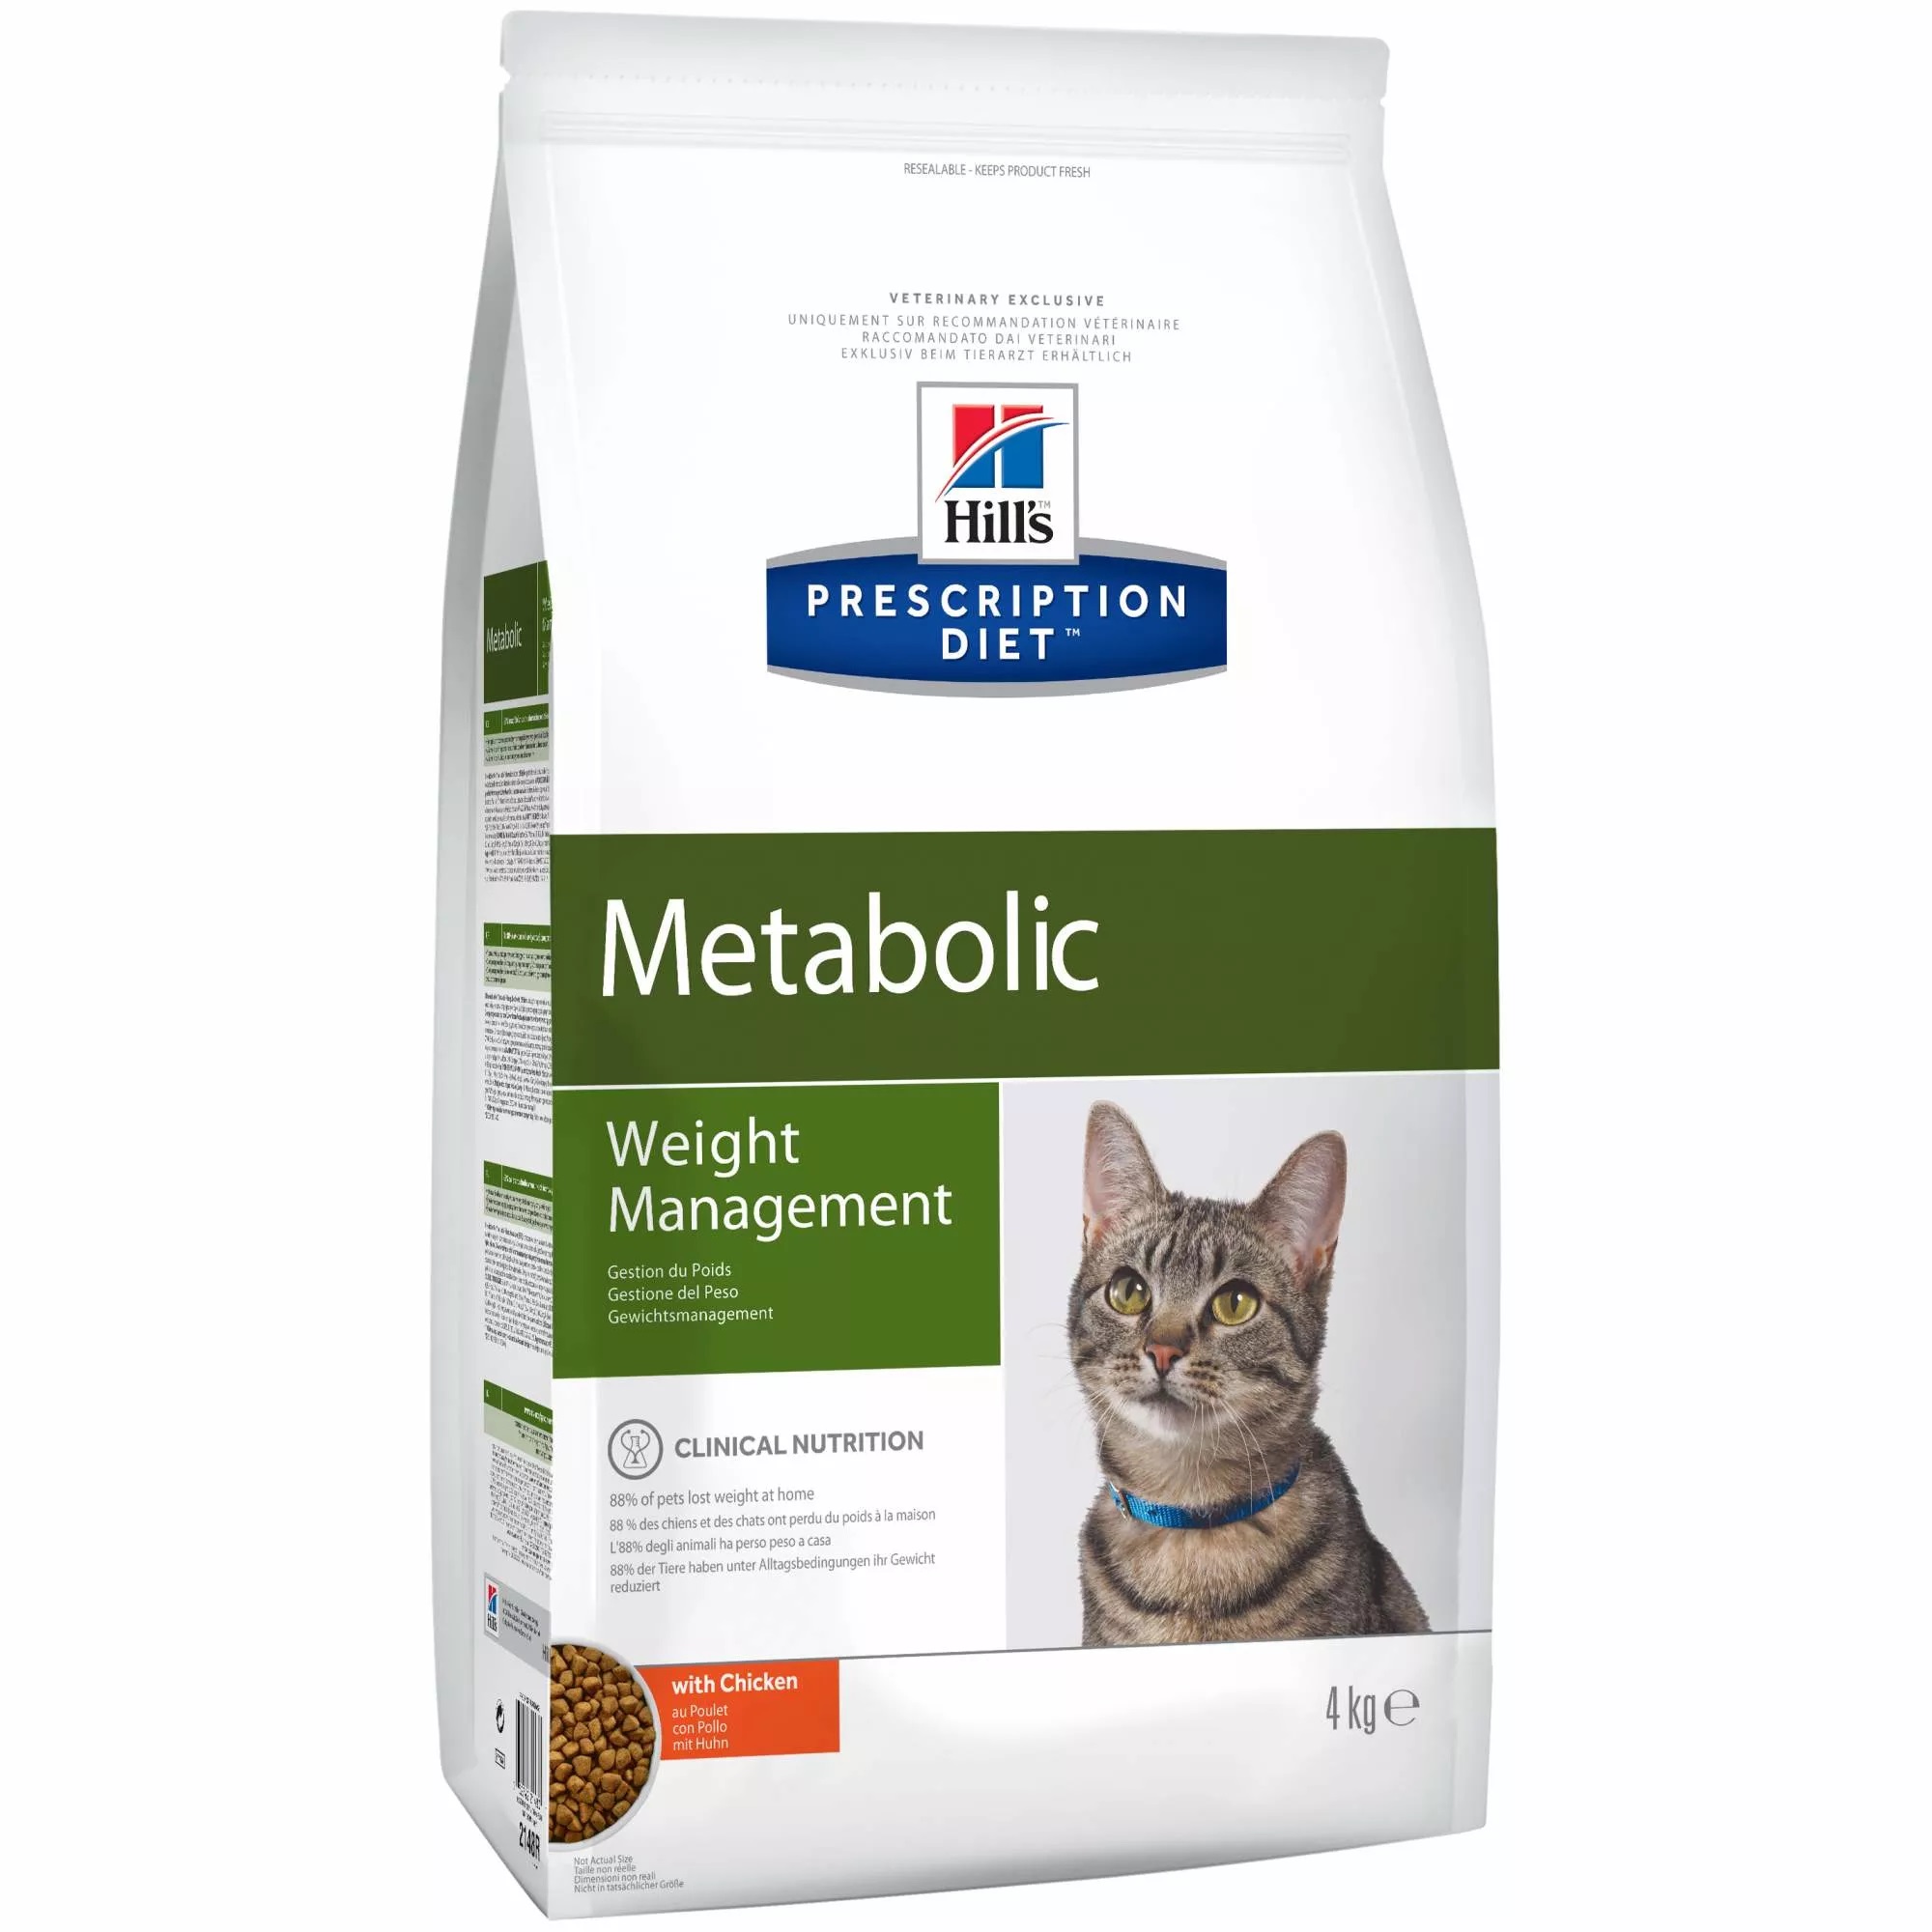 Сухой корм для кошек Hills Prescription Diet Metabolic, для коррекции  веса, курица, 4кг - отзывы покупателей на маркетплейсе Мегамаркет | Артикул  товара:100001277520